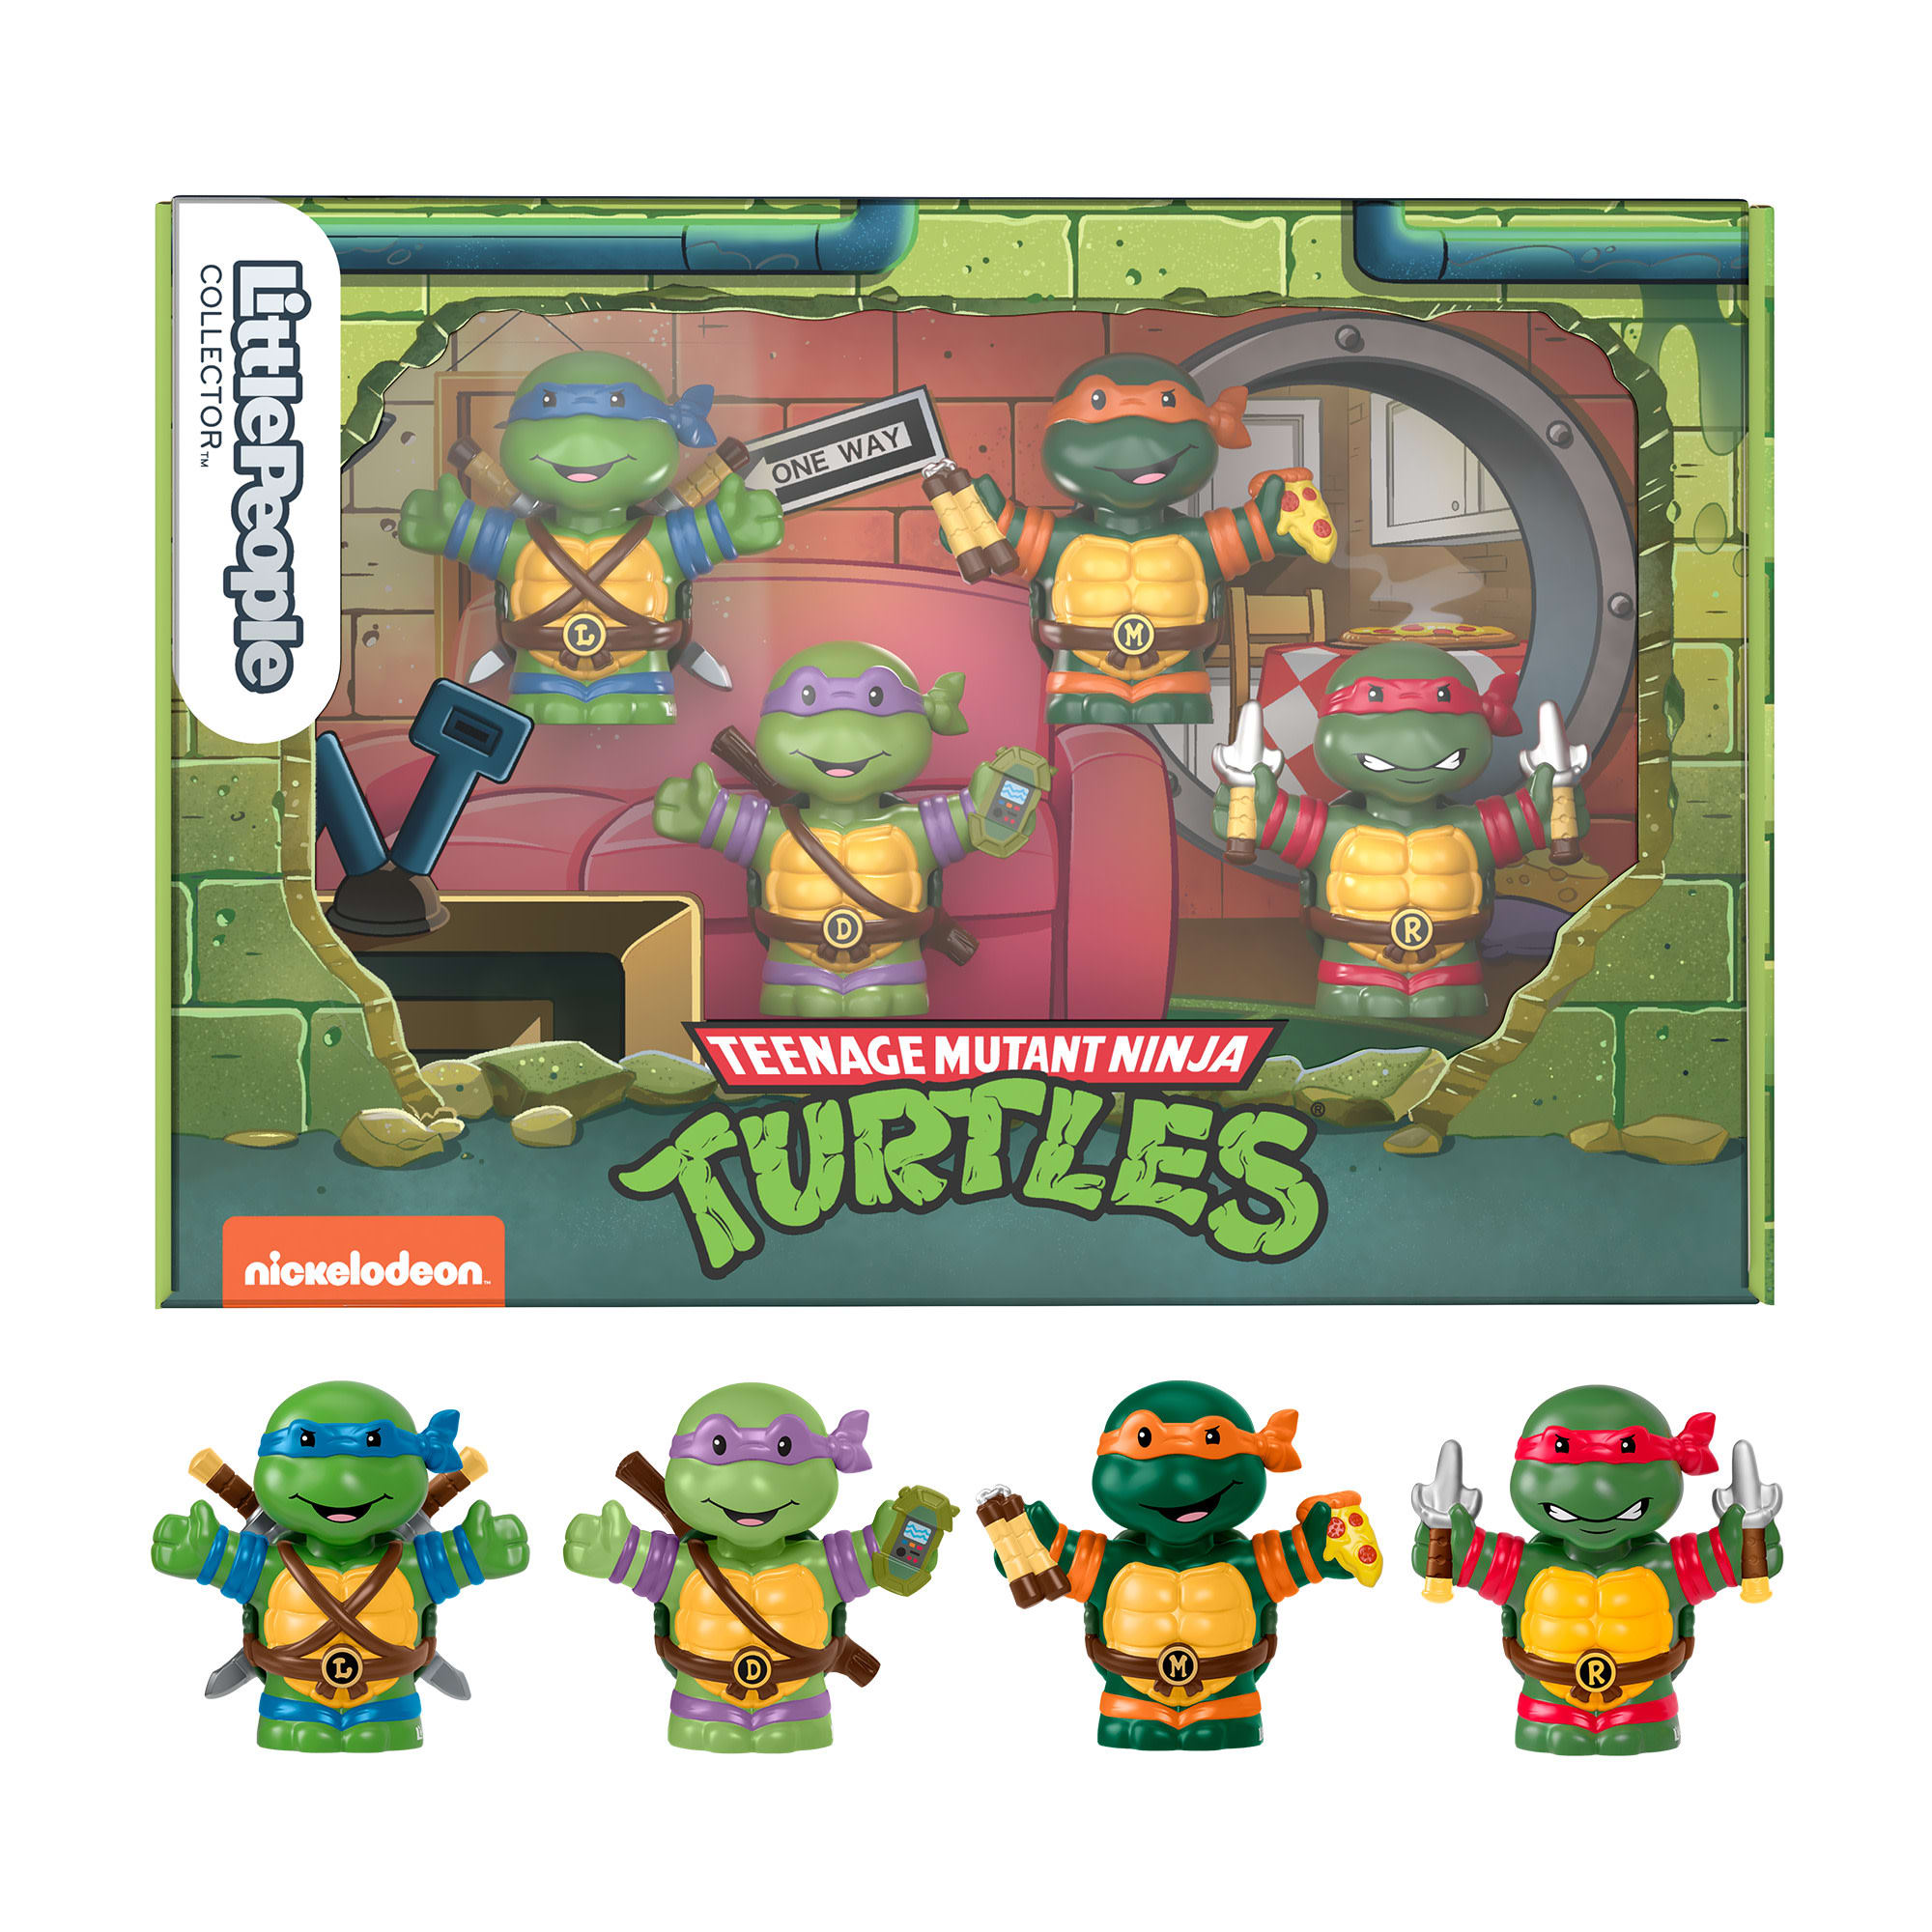 Little People Collector Teenage Mutant Ninja Turtles |Mattel